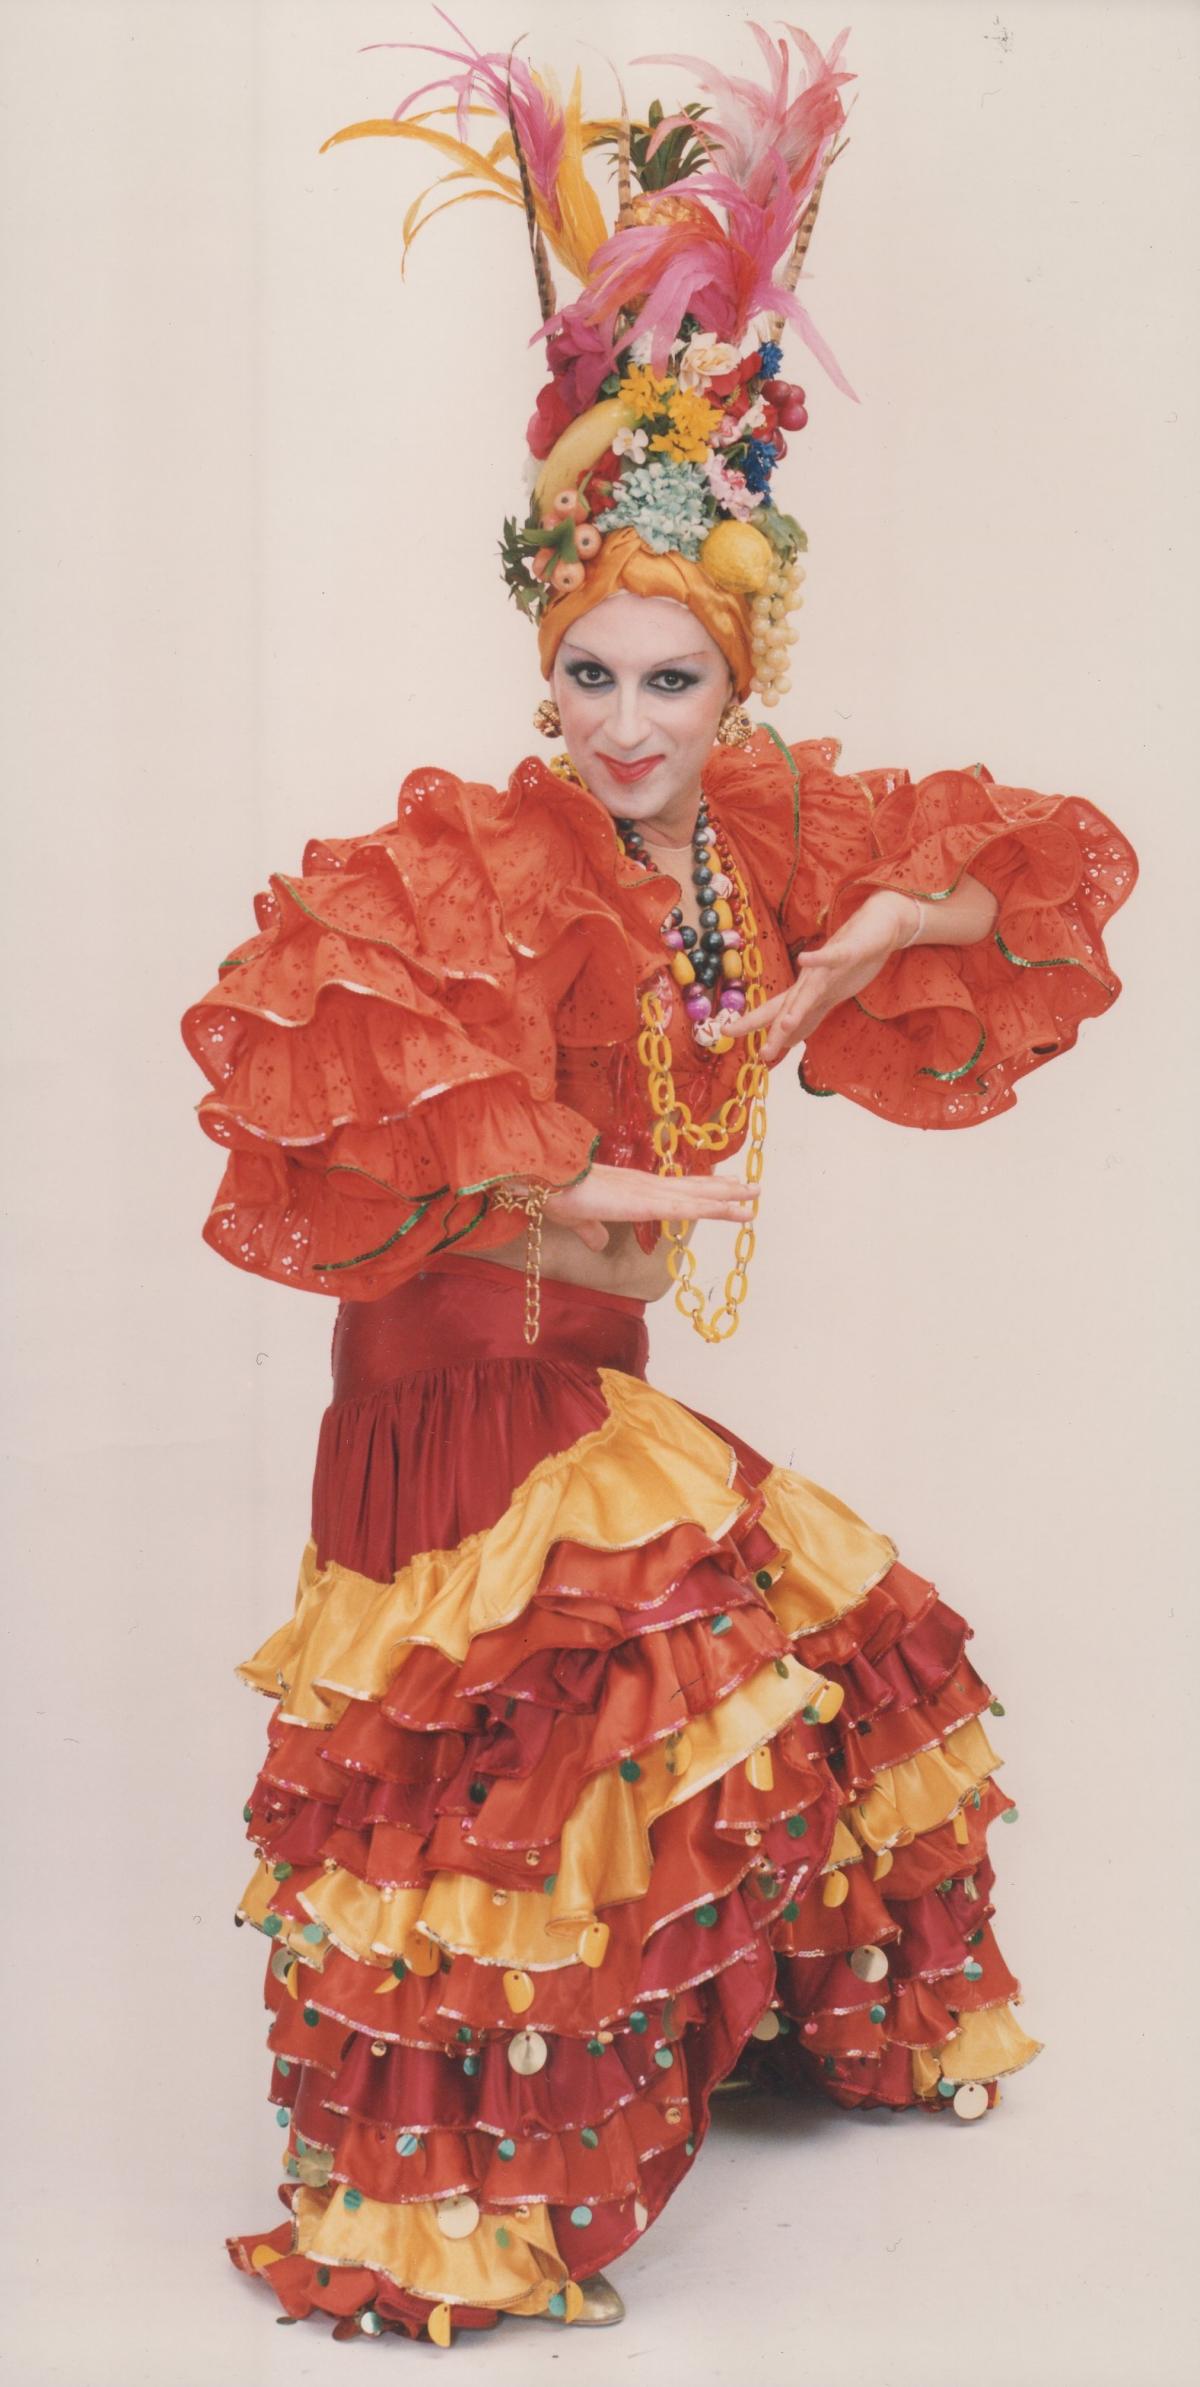 Blog-la ballerina di flamenco